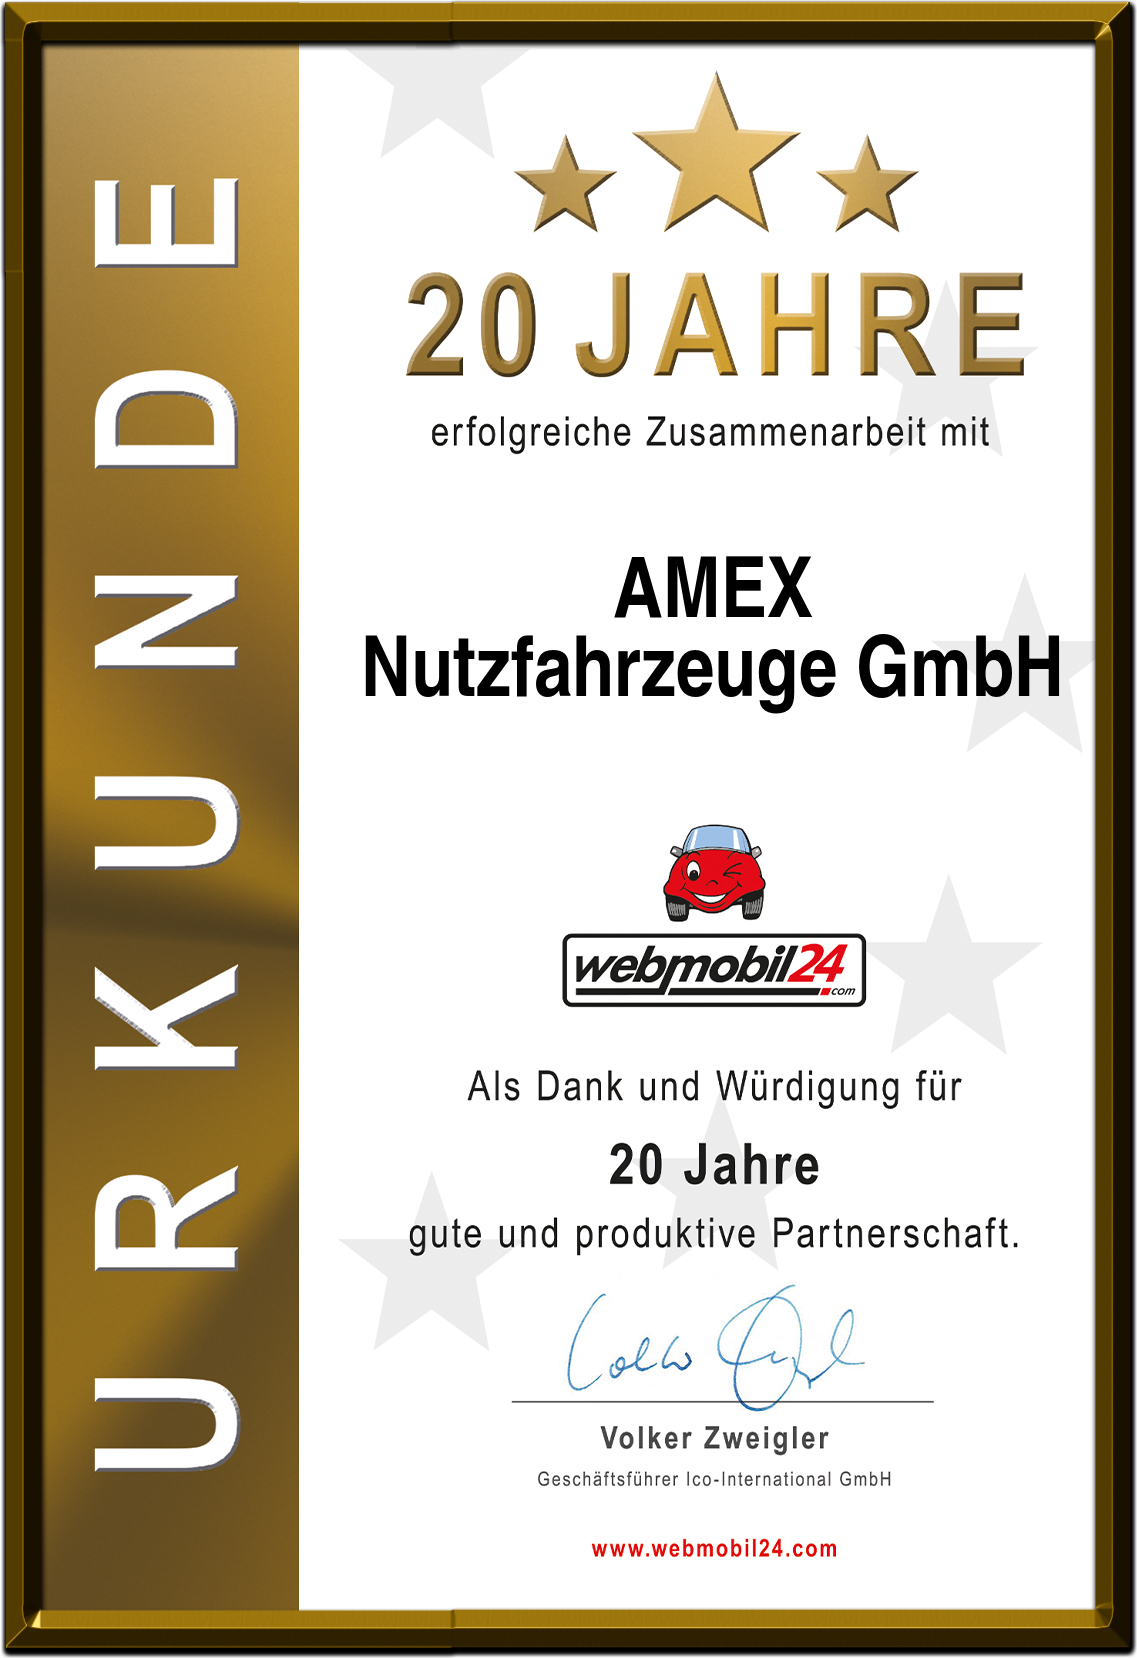 AMEXNutzfahrzeuge GmbH